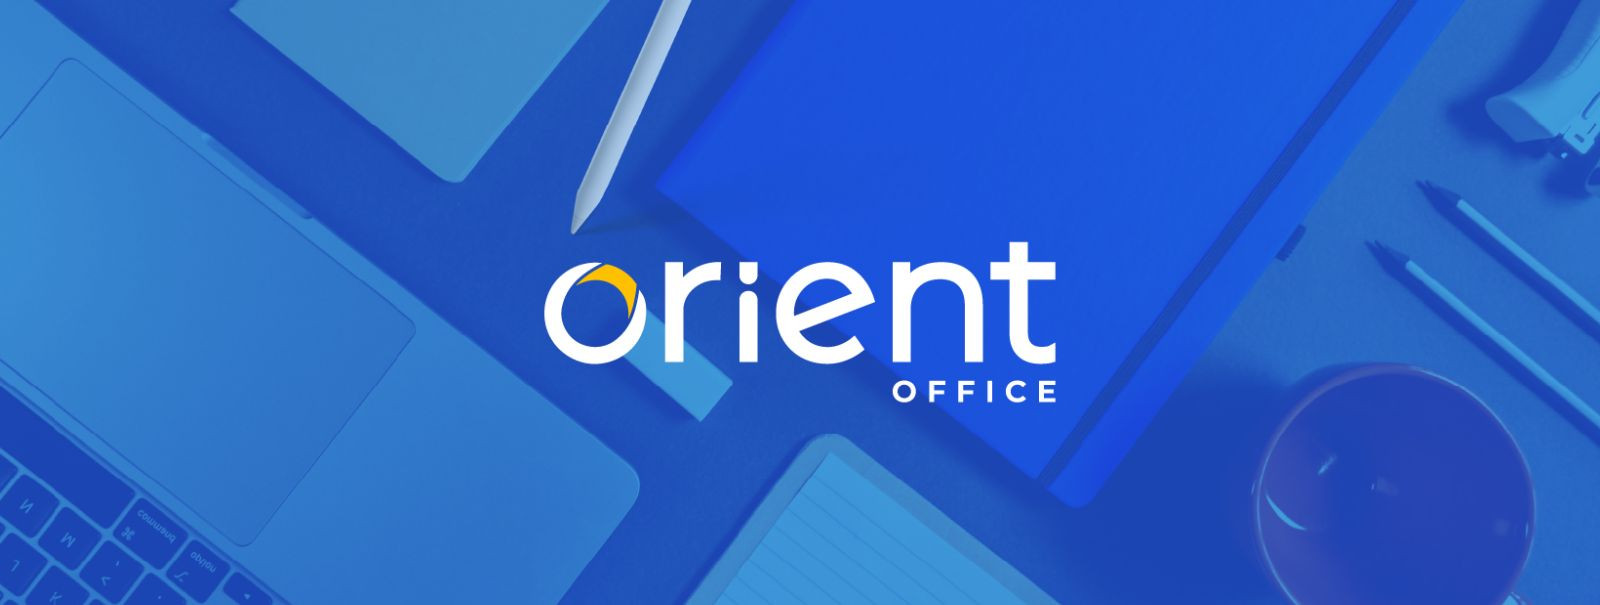 Orient Kontorikaubad AS on asutatud 12. septembril 1995 Tallinnas.  Ettevõtte omanikud on OÜ Rinex 67% ja OÜ Marcell 33%  Ettevõtte põhitegevusala EMTAK-i järgi